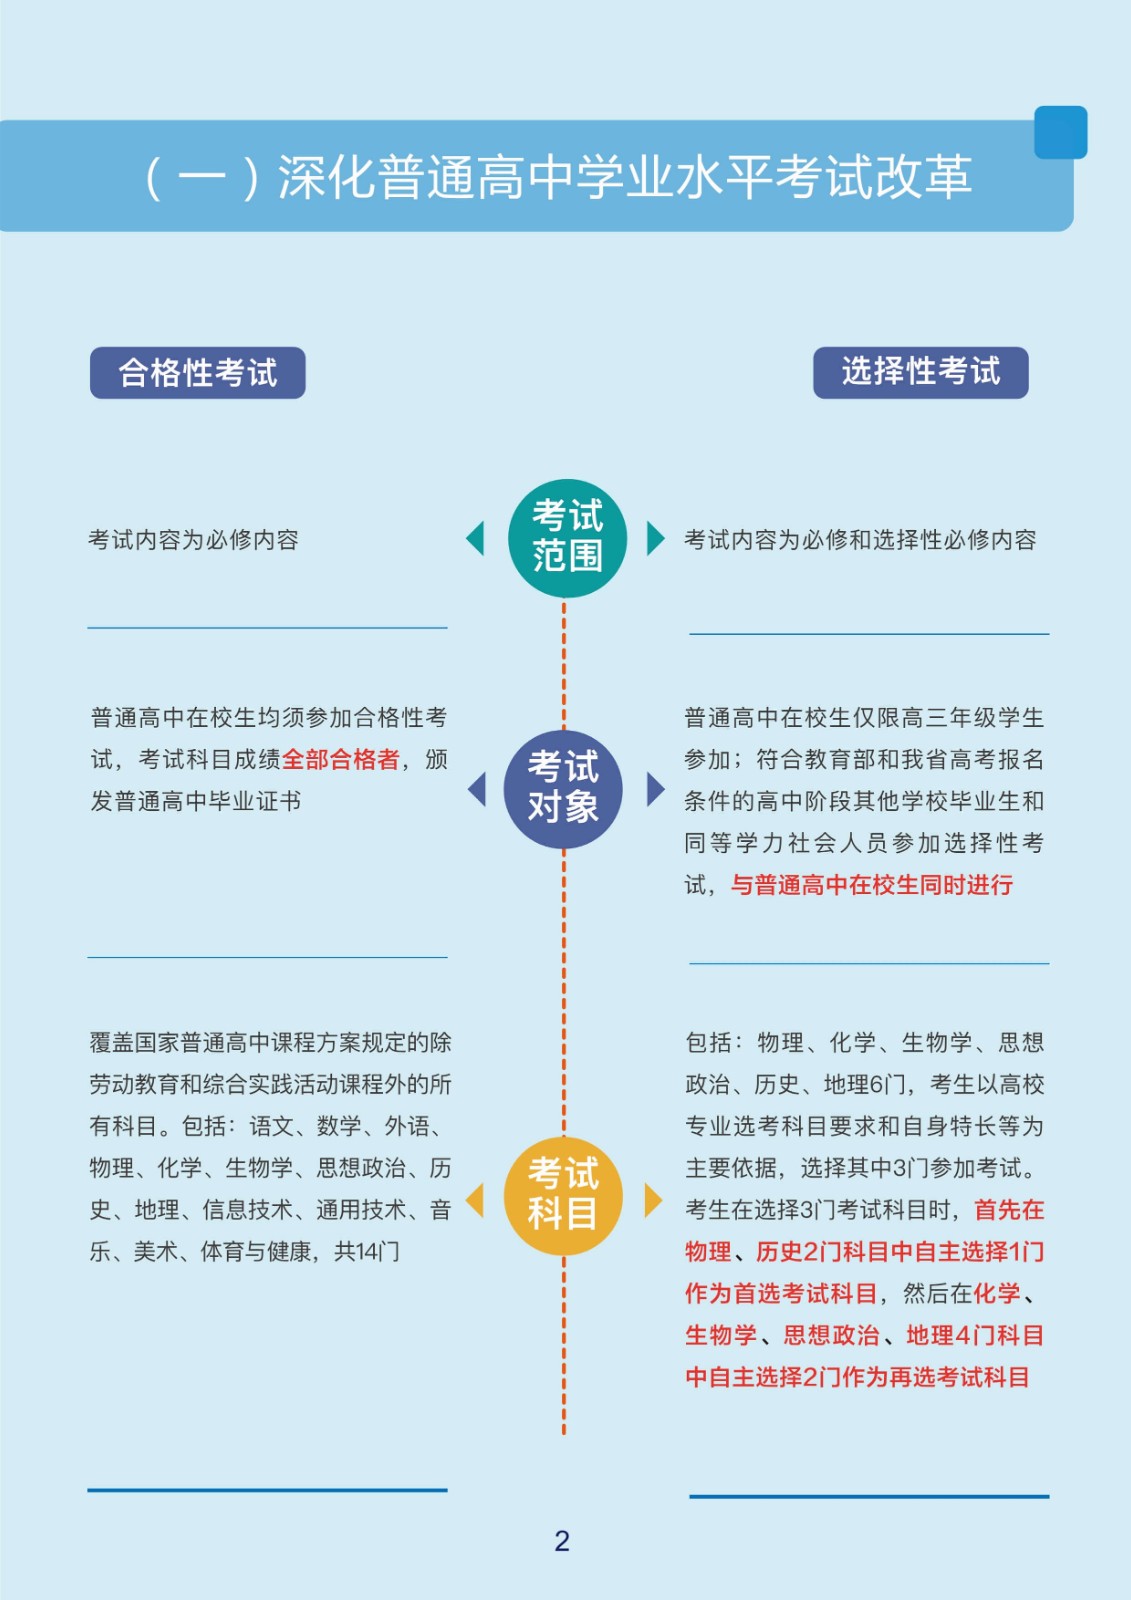 2022年黑龙江省统一考试综合改革实施方案图解